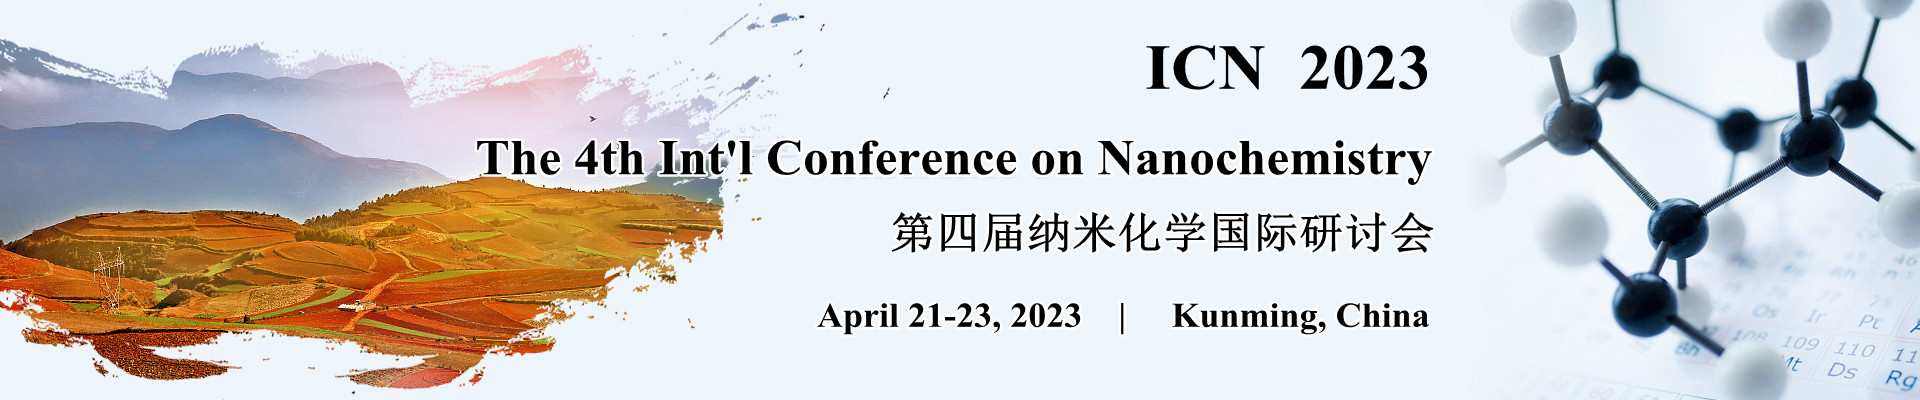 第四届纳米化学国际研讨会(ICN 2023)